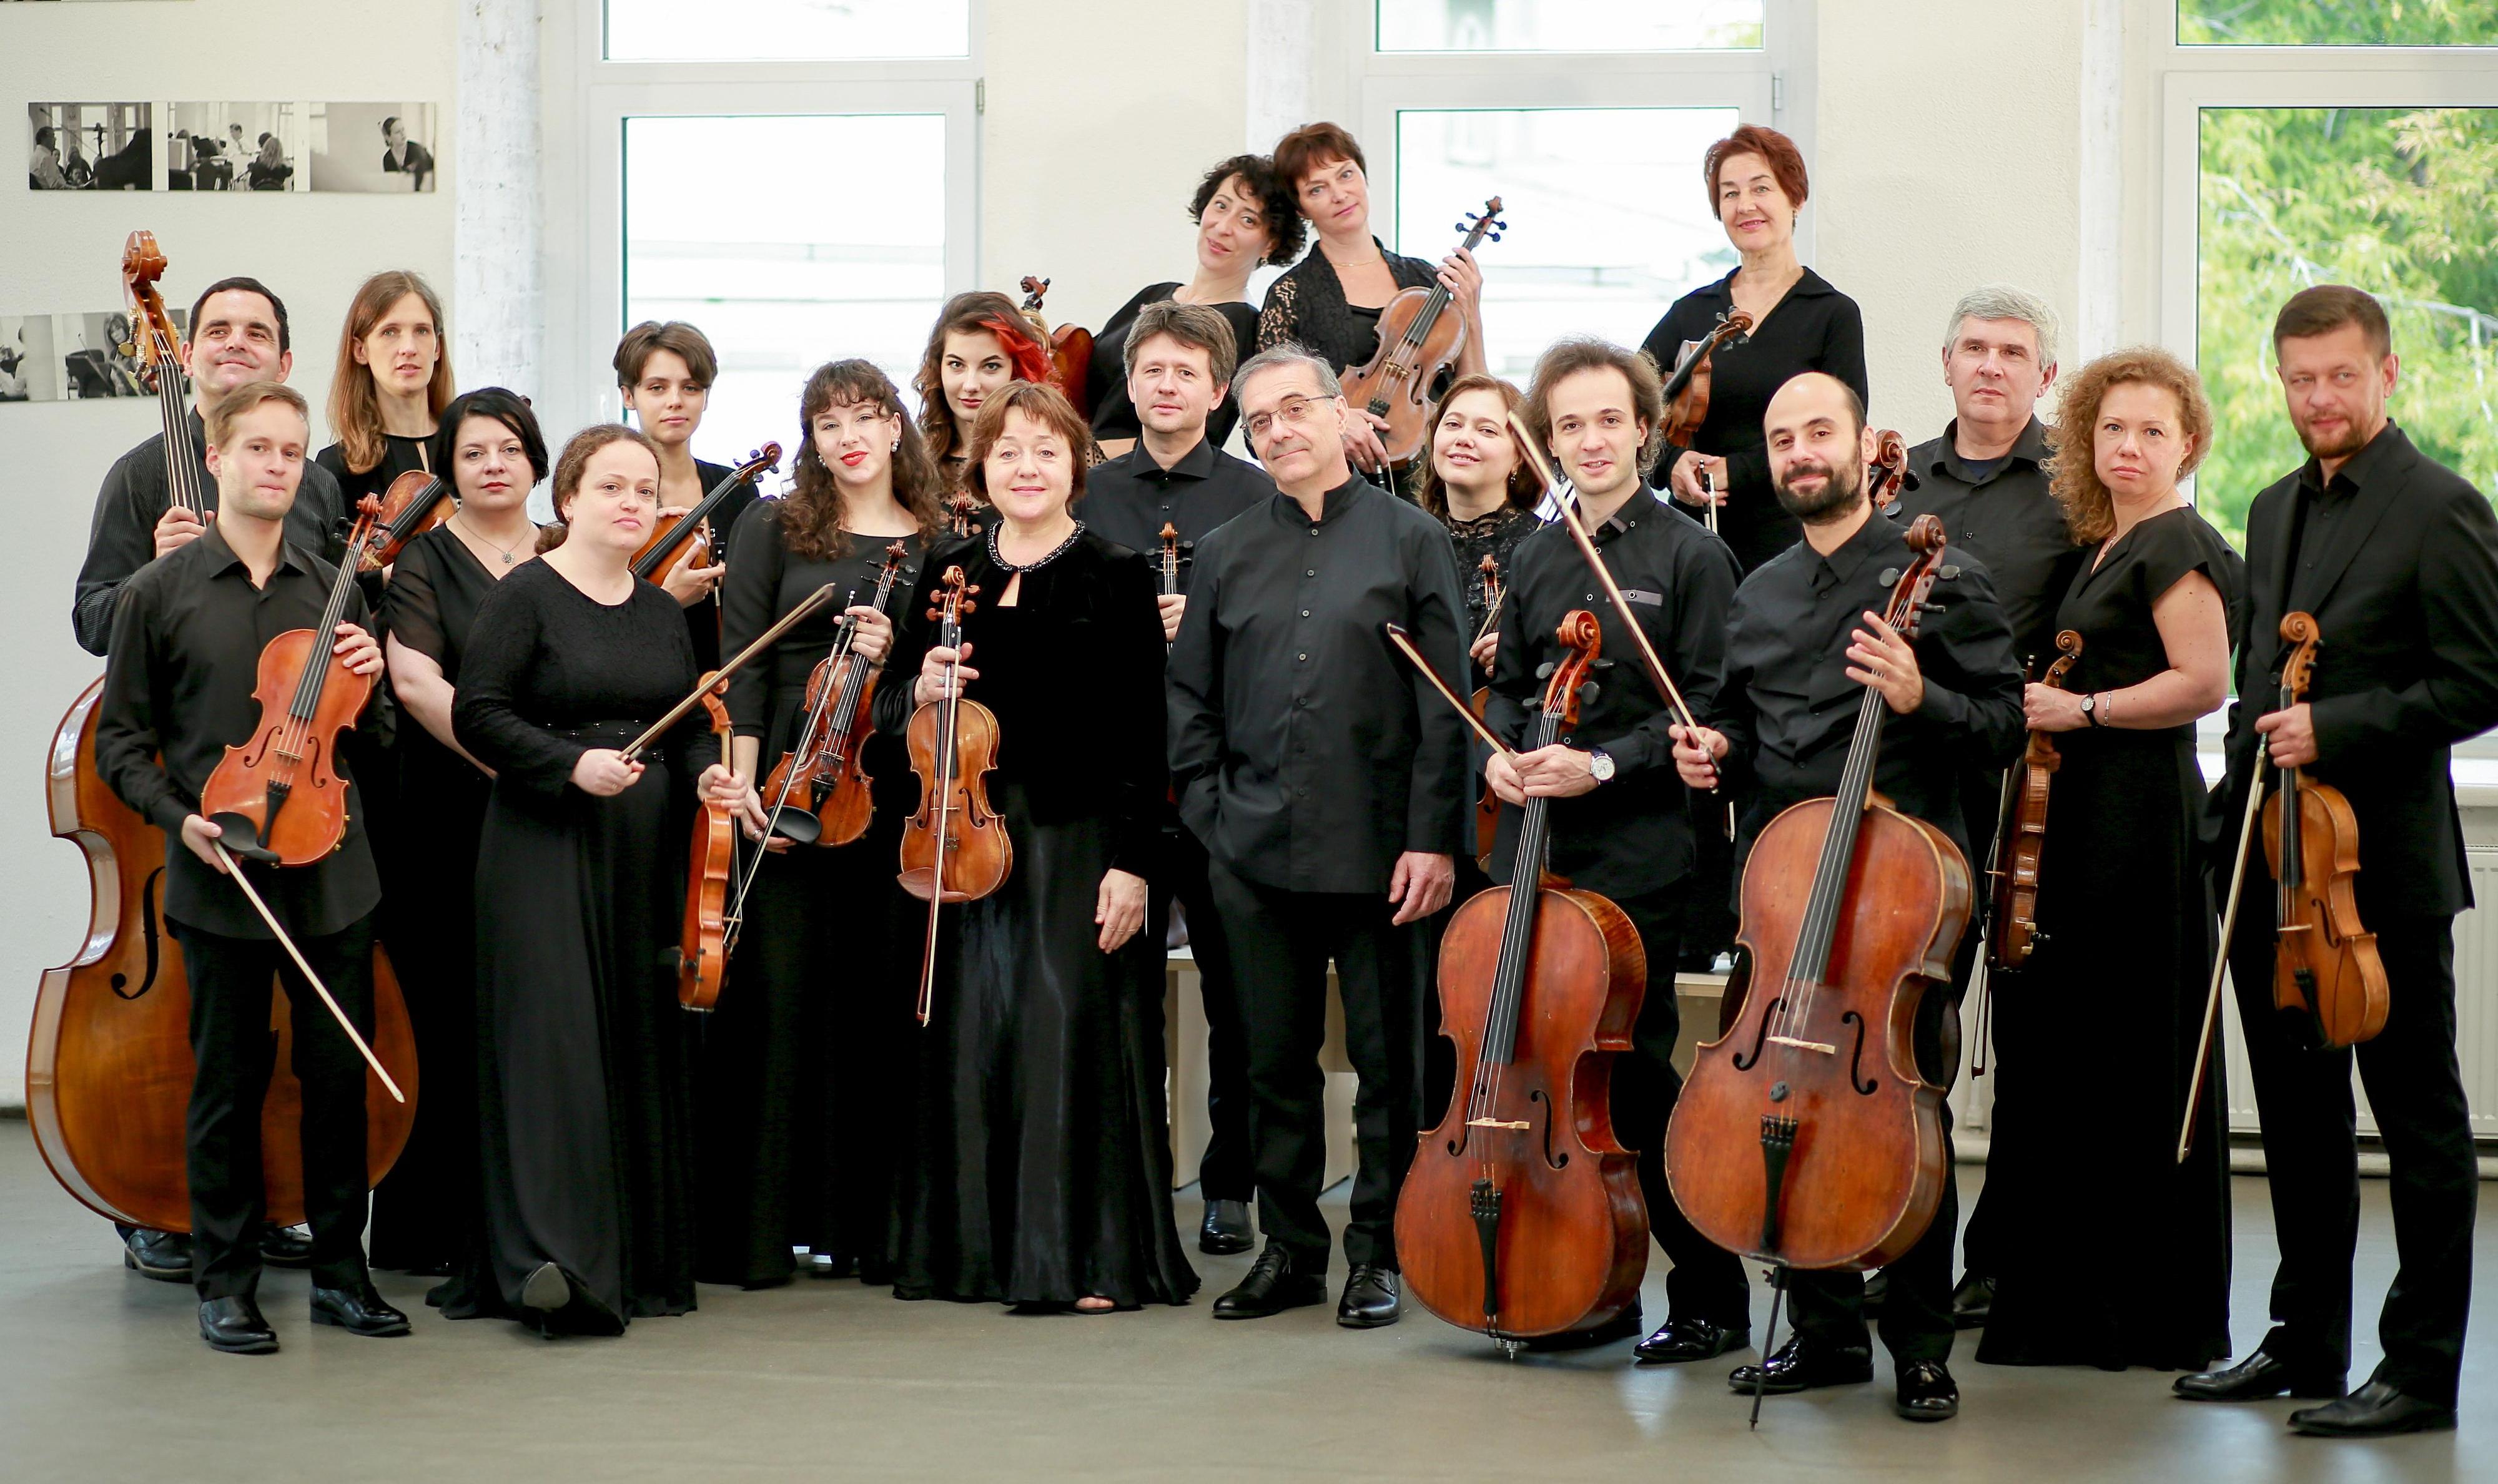 Оркестр Musica Viva, дирижёр — Александр Рудин. Солист — Даниил Коган